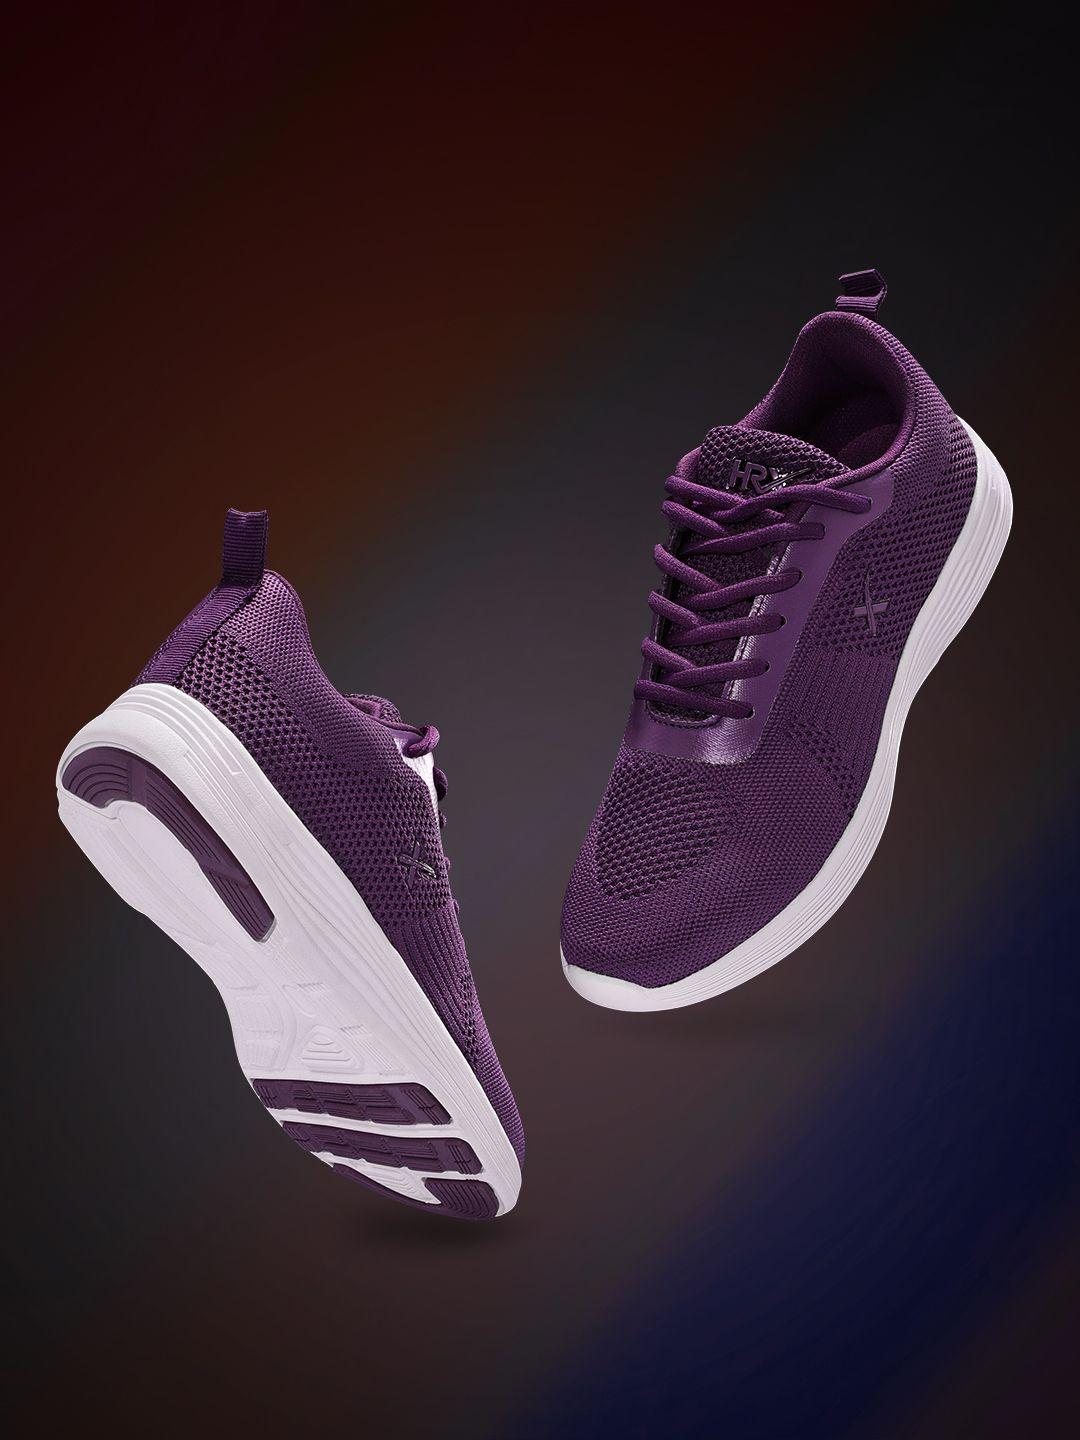 hrx by hrithik roshan women purple woven design front runner shoes